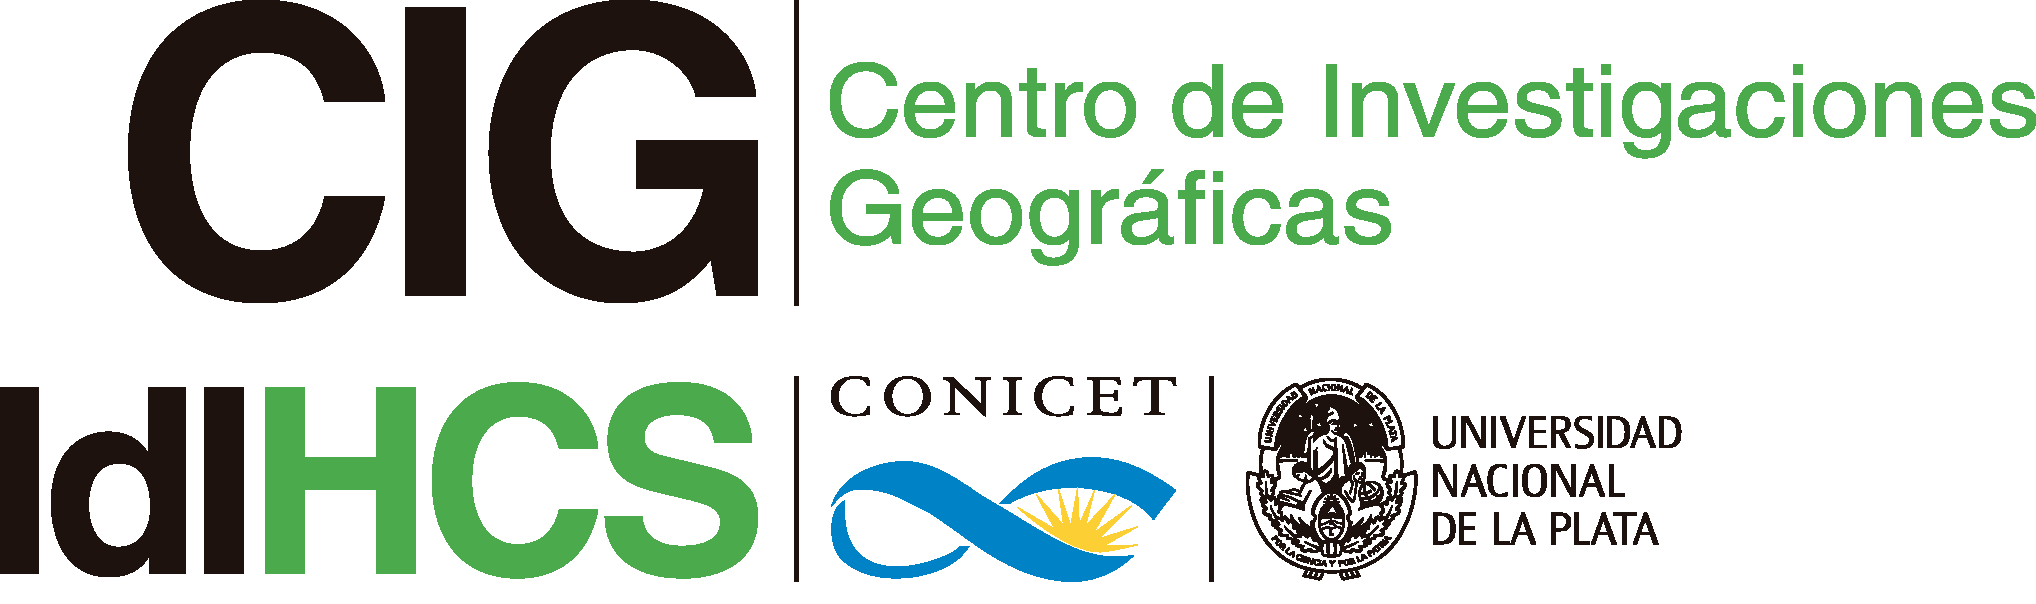 Centro de Investigaciones Geográficas